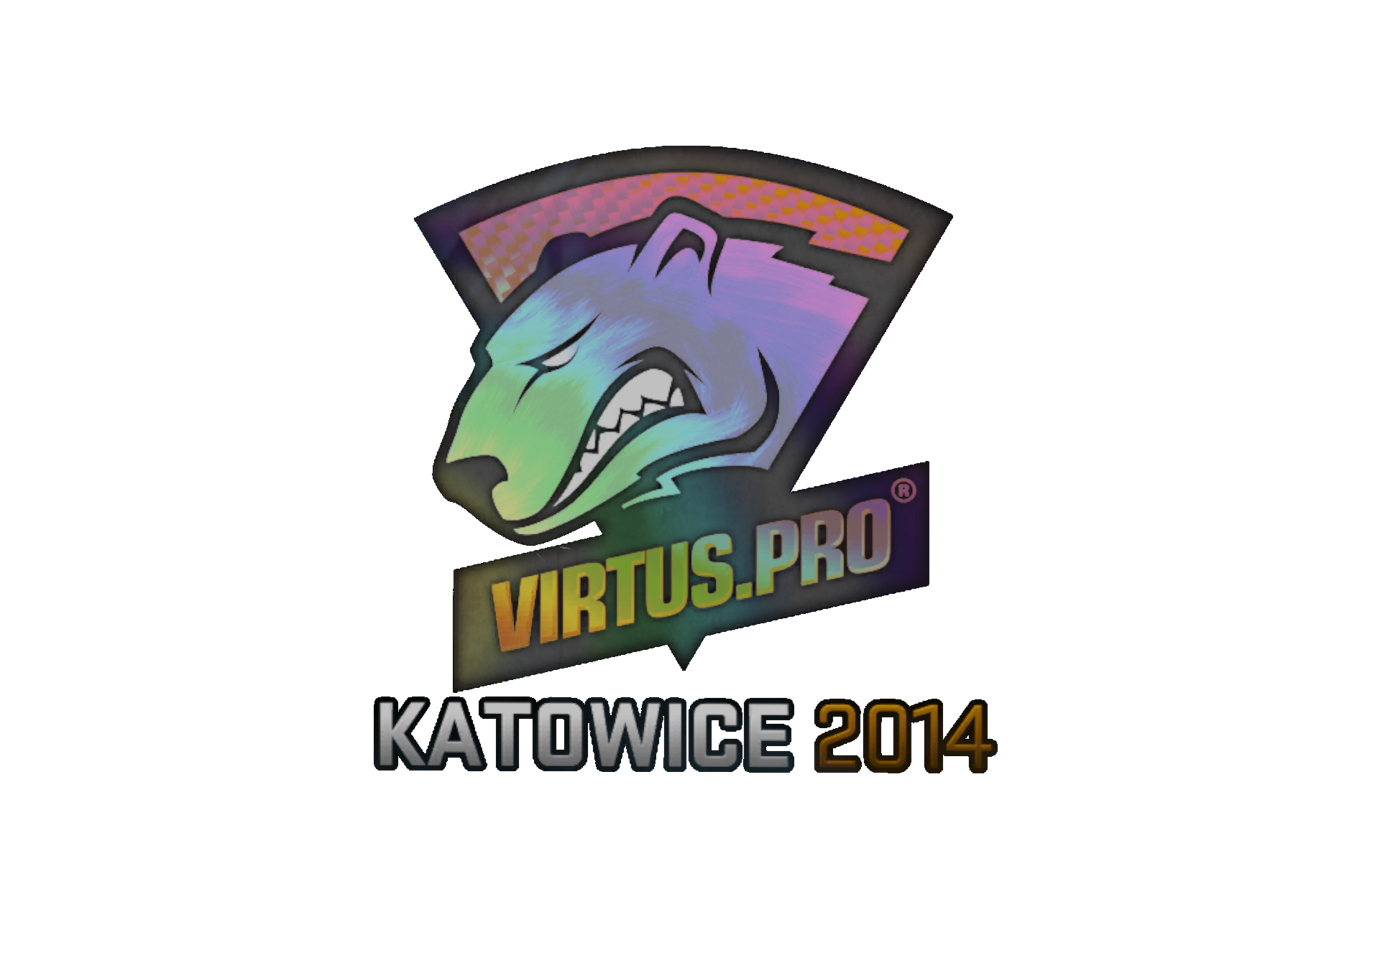 Virtus.pro (Holo) | Katowice 2014